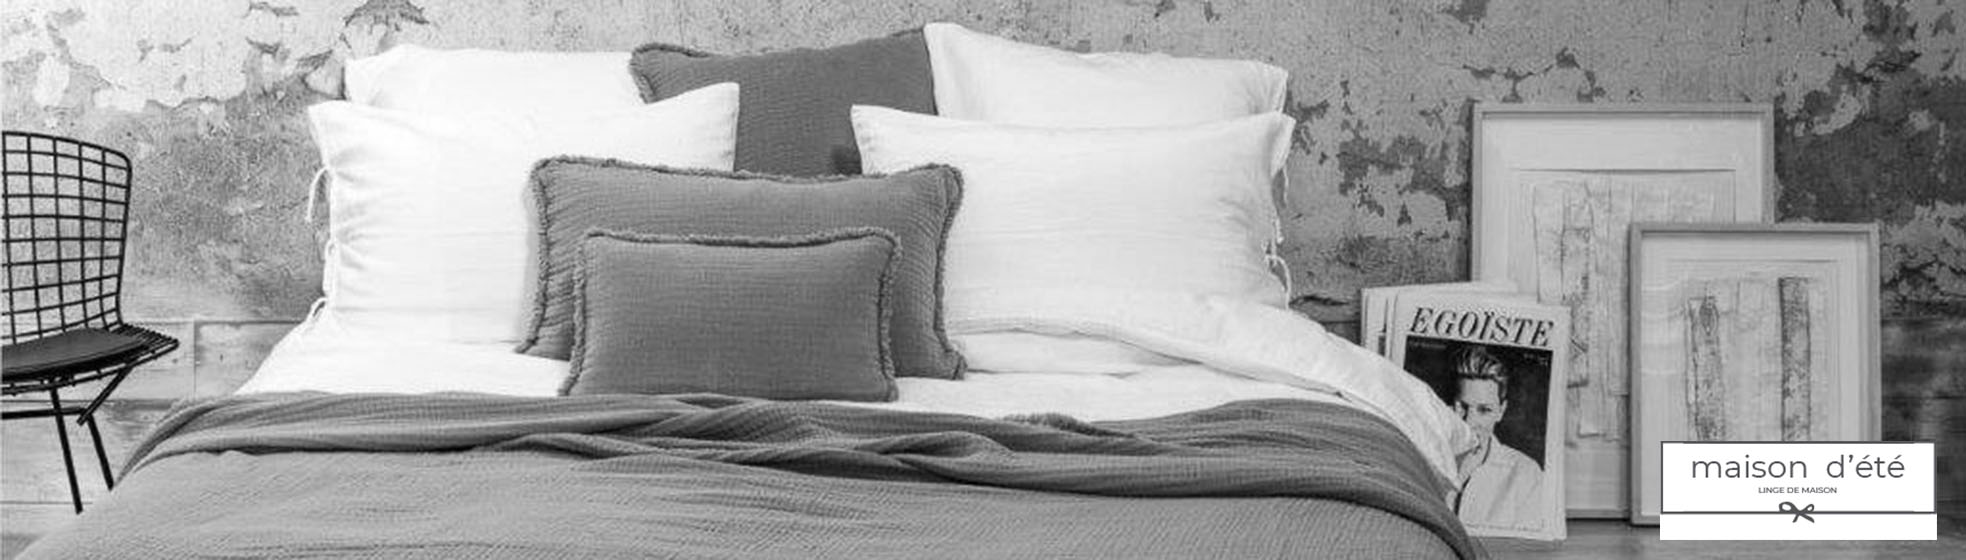 Taie oreiller linge de lit de qualité